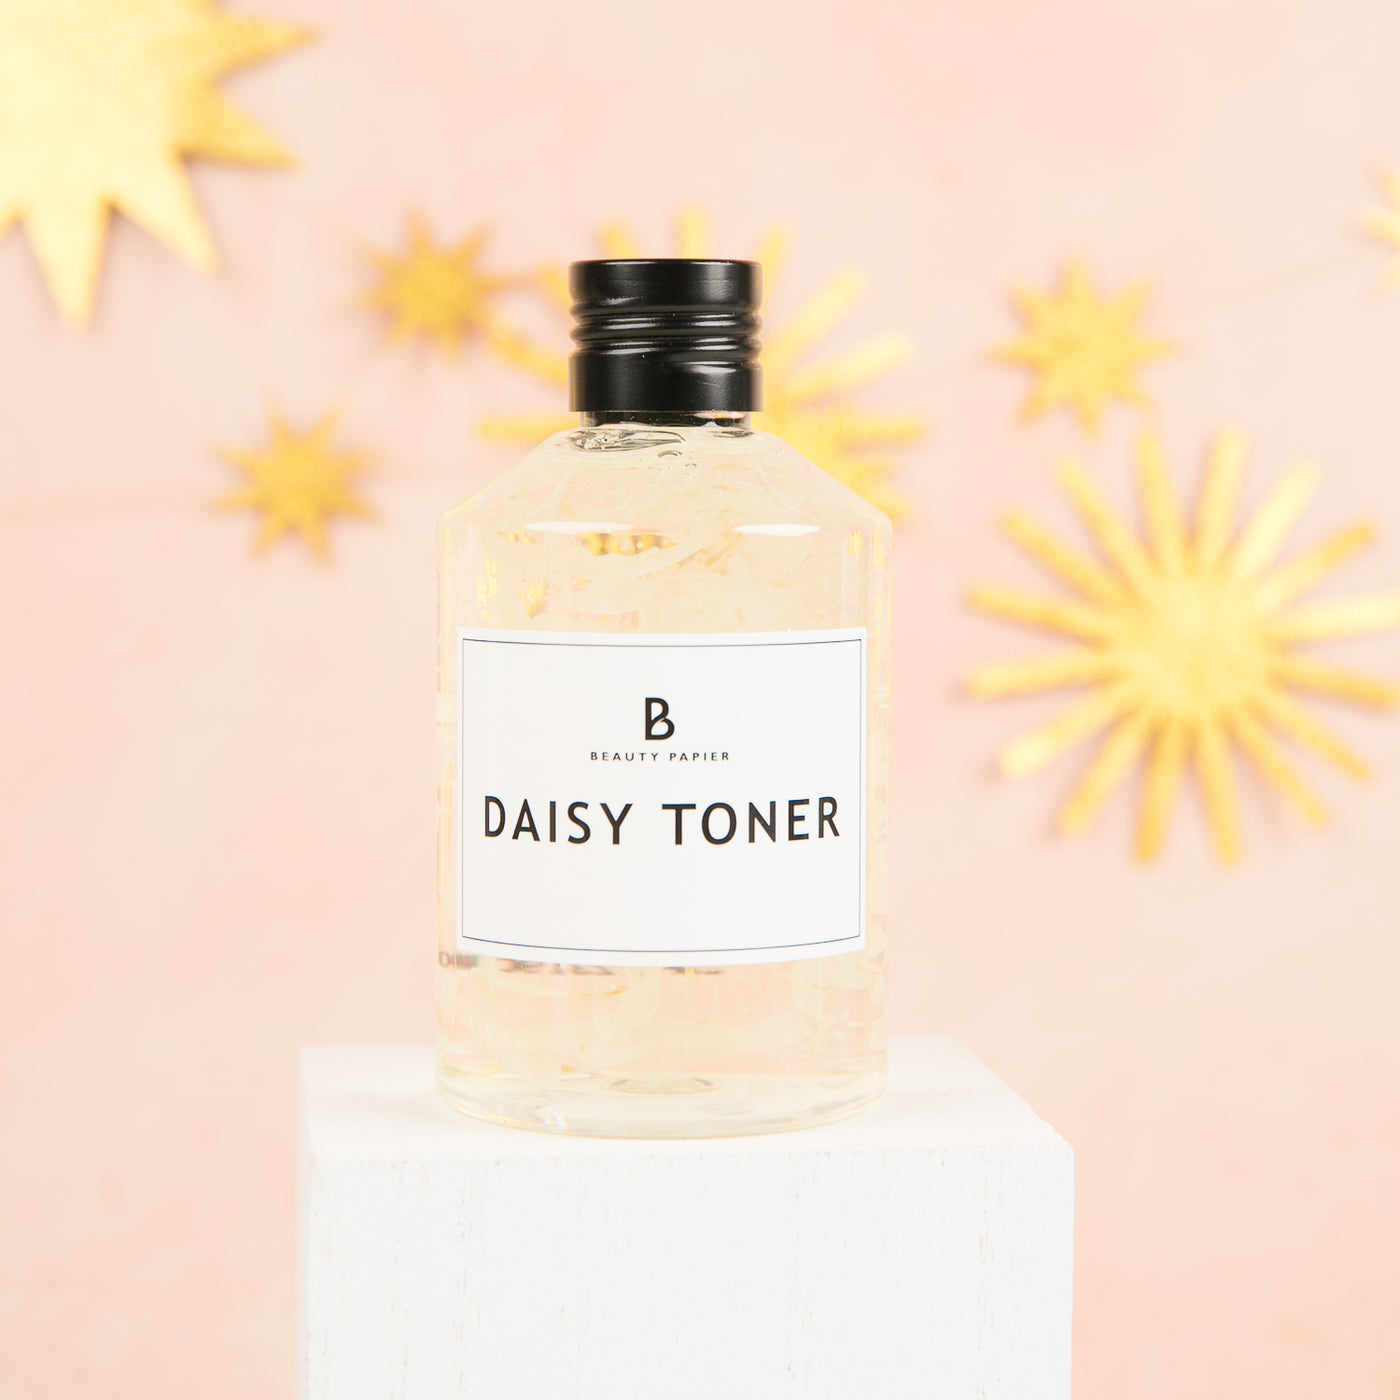 Beauty Papier - Daisy Toner